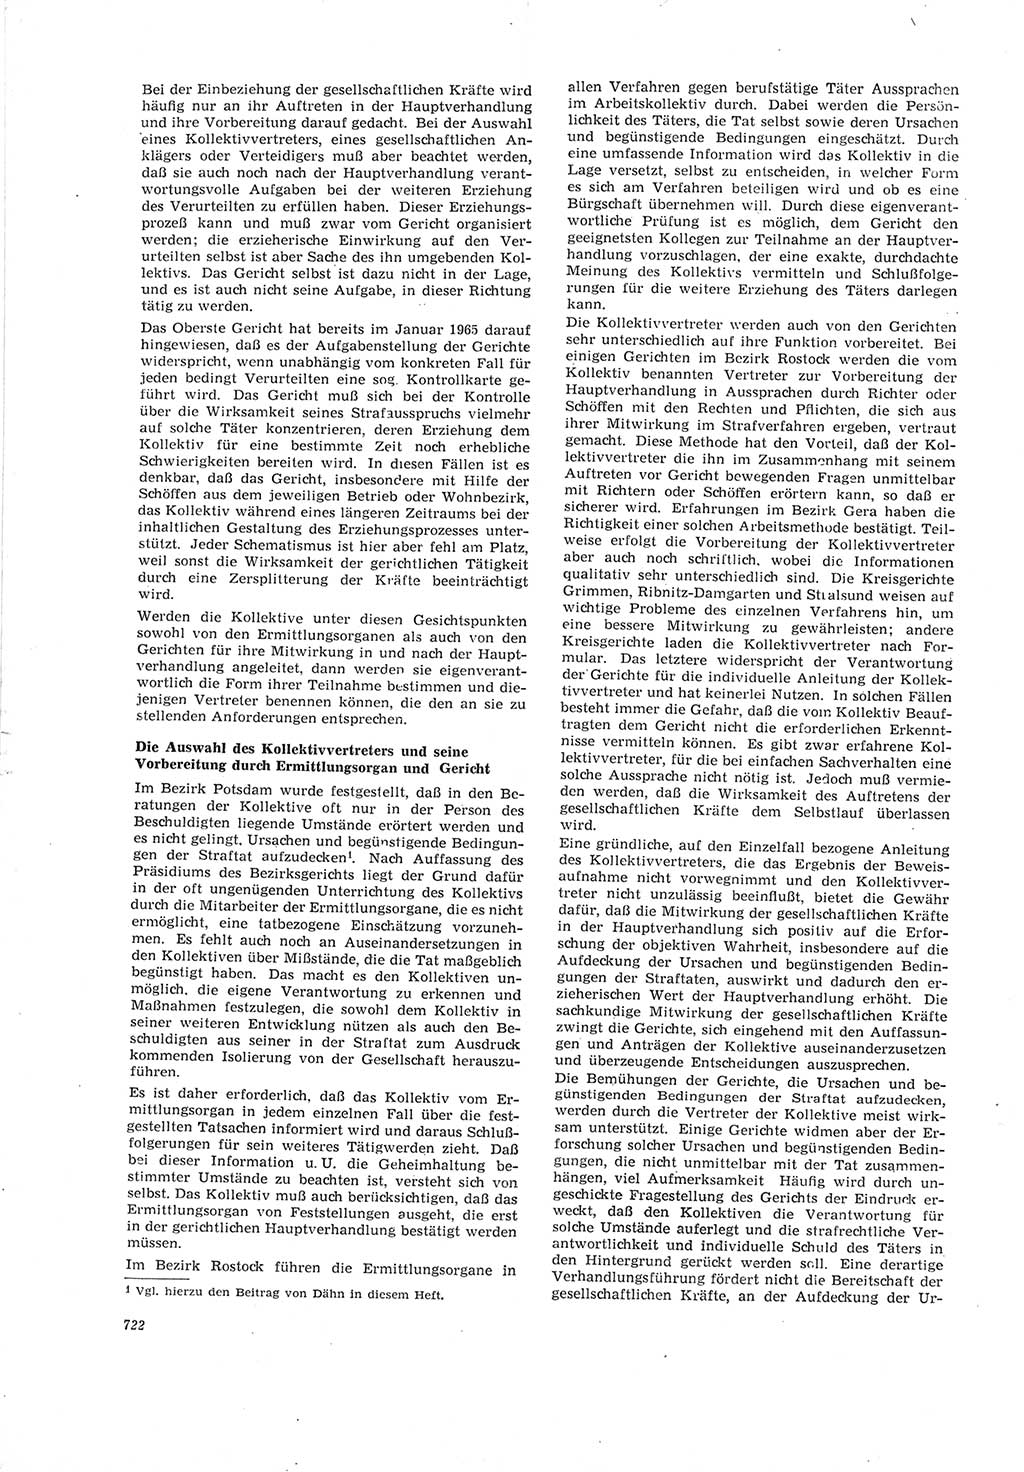 Neue Justiz (NJ), Zeitschrift für Recht und Rechtswissenschaft [Deutsche Demokratische Republik (DDR)], 19. Jahrgang 1965, Seite 722 (NJ DDR 1965, S. 722)